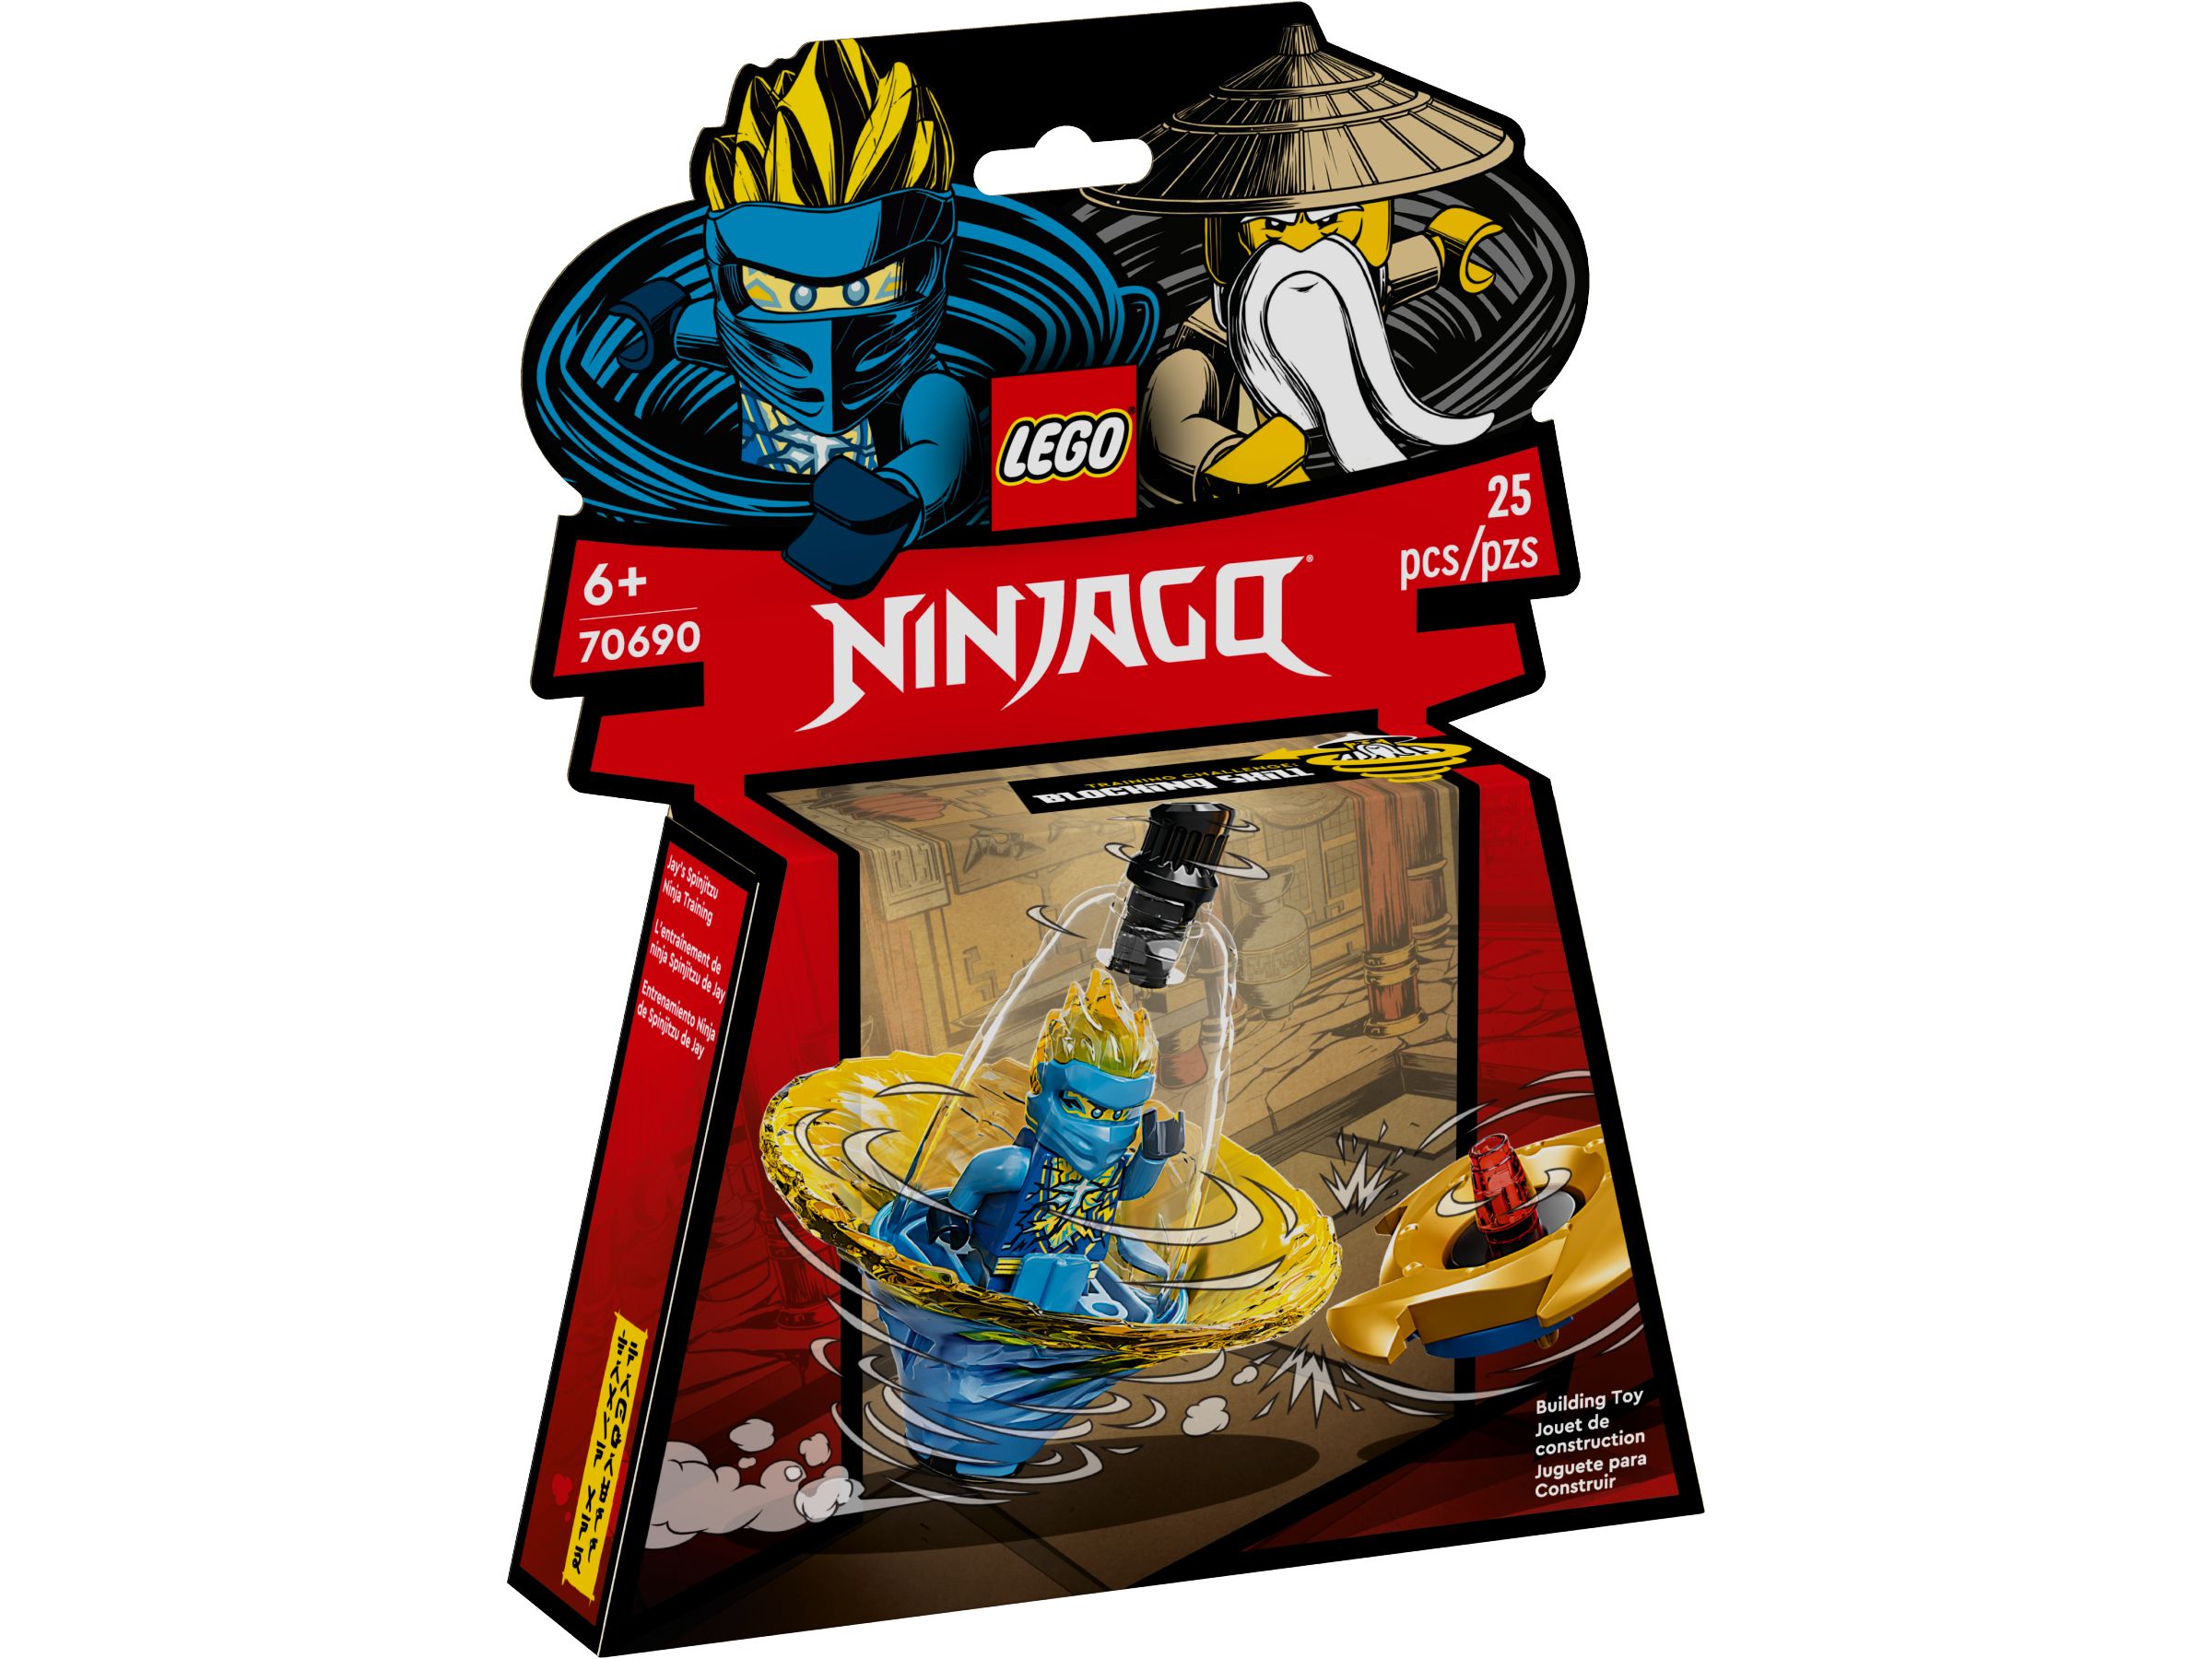 LEGO Ninjago 70690 Jays Spinjitzu-Ninjatraining LEGO_70690_alt1.jpg